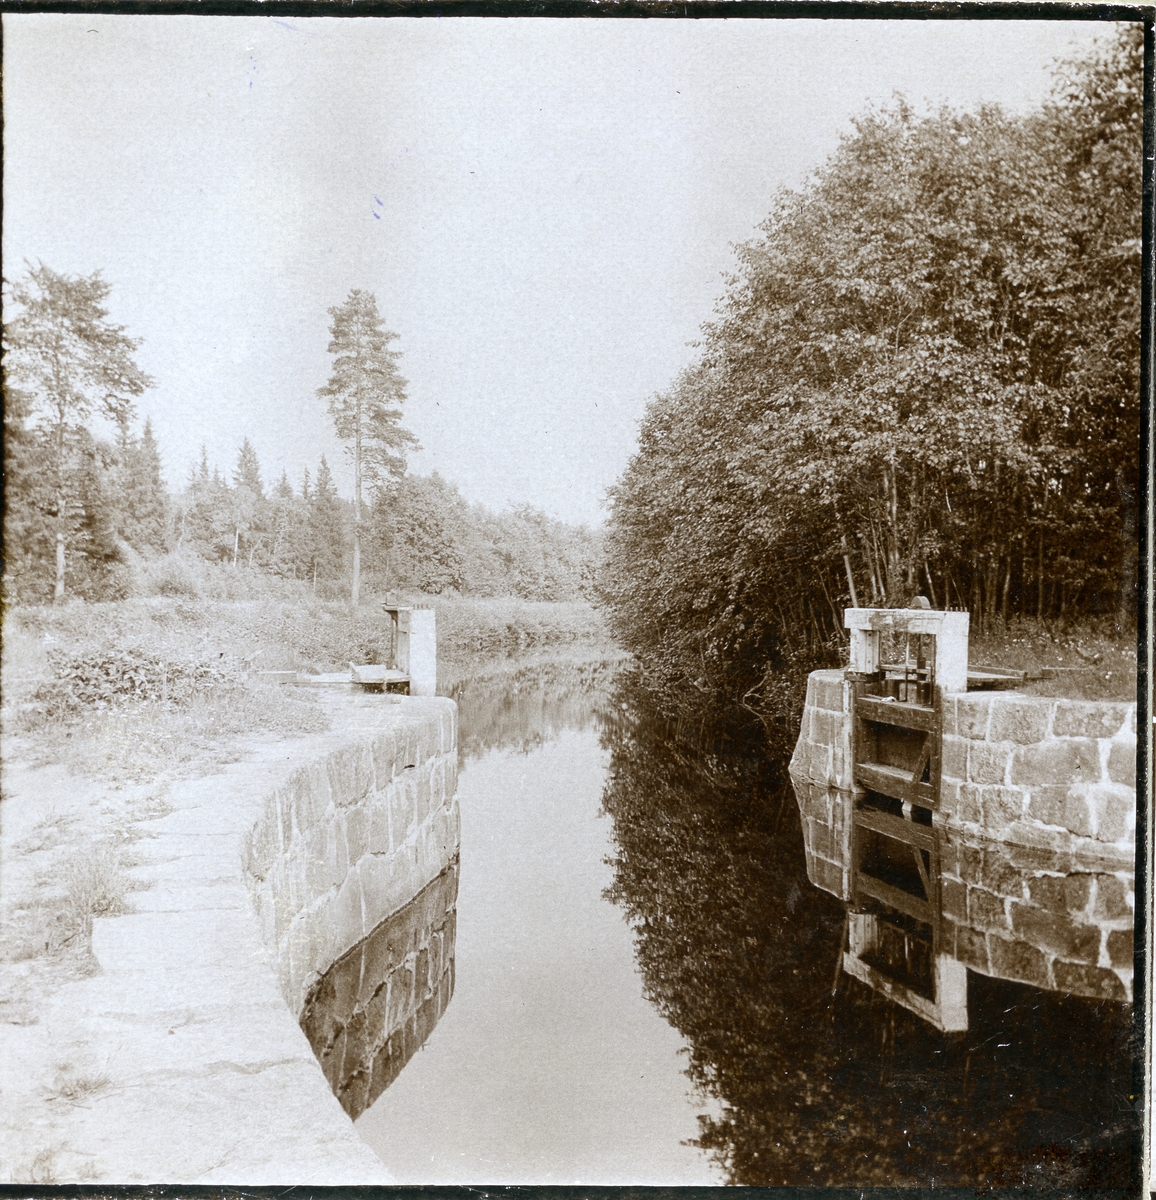 Västanfors sn, Fagersta kn, Strömsholms kanal.
Stereoskopiskt foto (3-D), c:a 1905-1915.